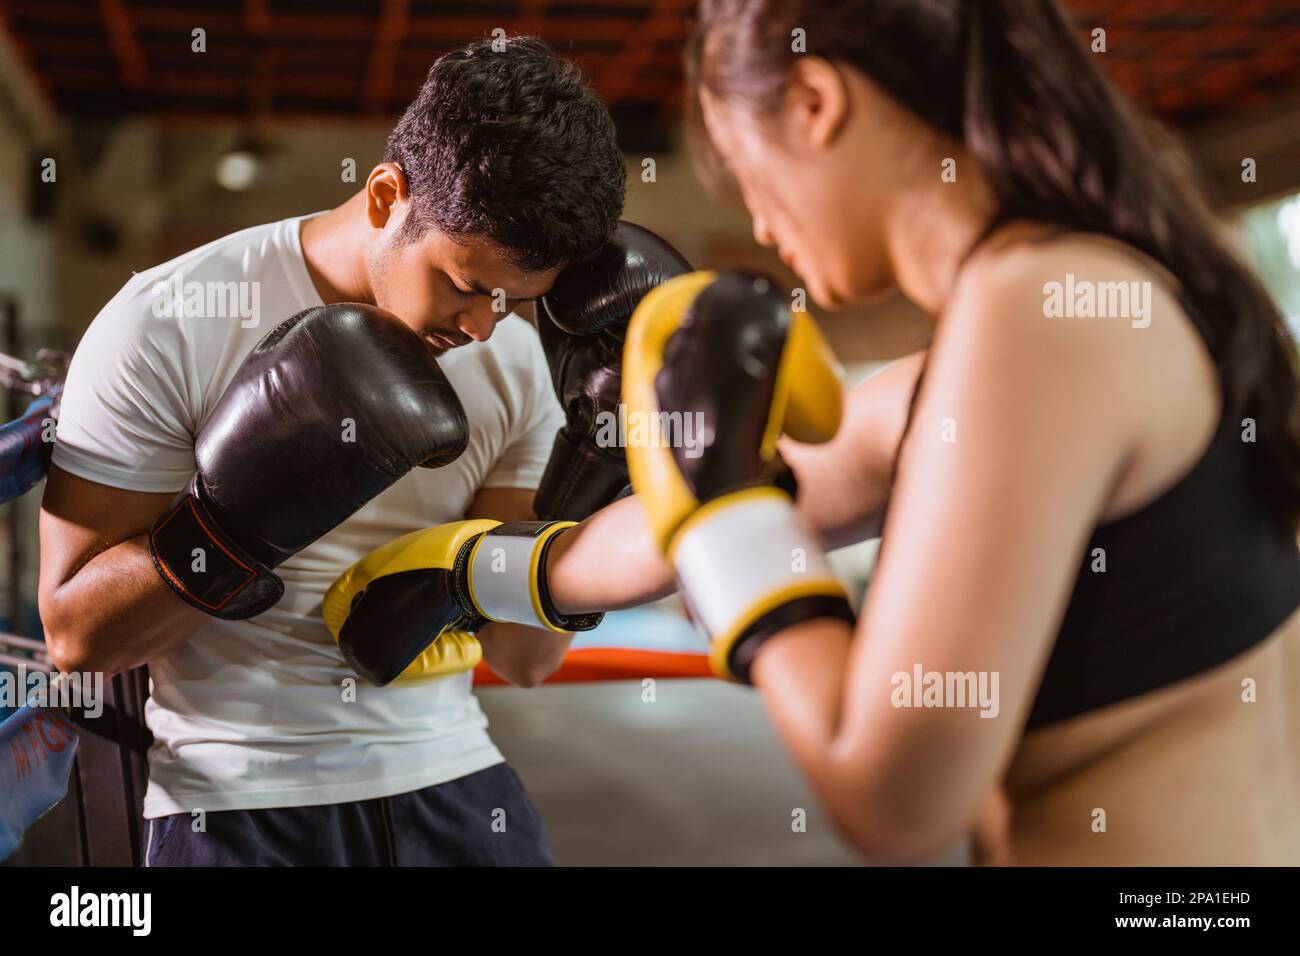 Eine Boxerin, die dem Boxer auf den Bauch schlägt Stockfoto